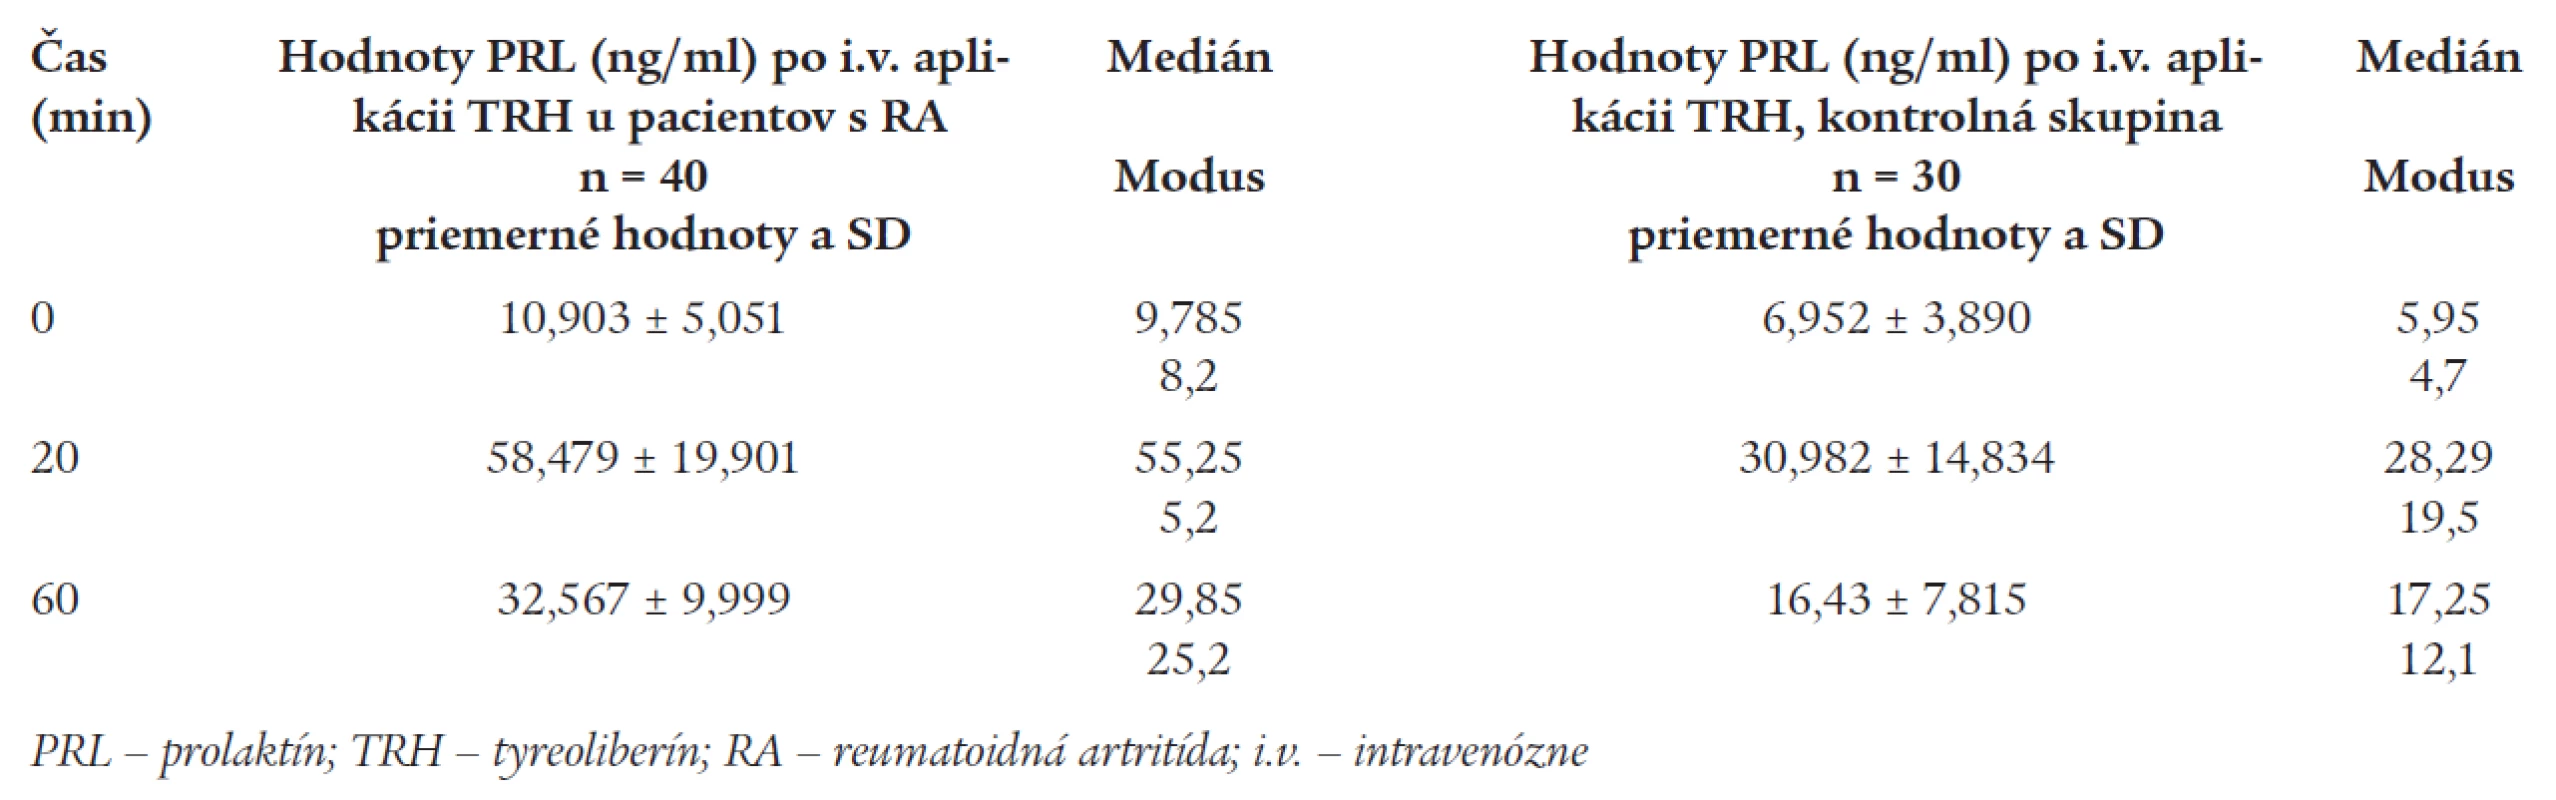 Priemerné hodnoty PRL po i.v. stimulácii TRH u pacientov s RA a u kontrol.